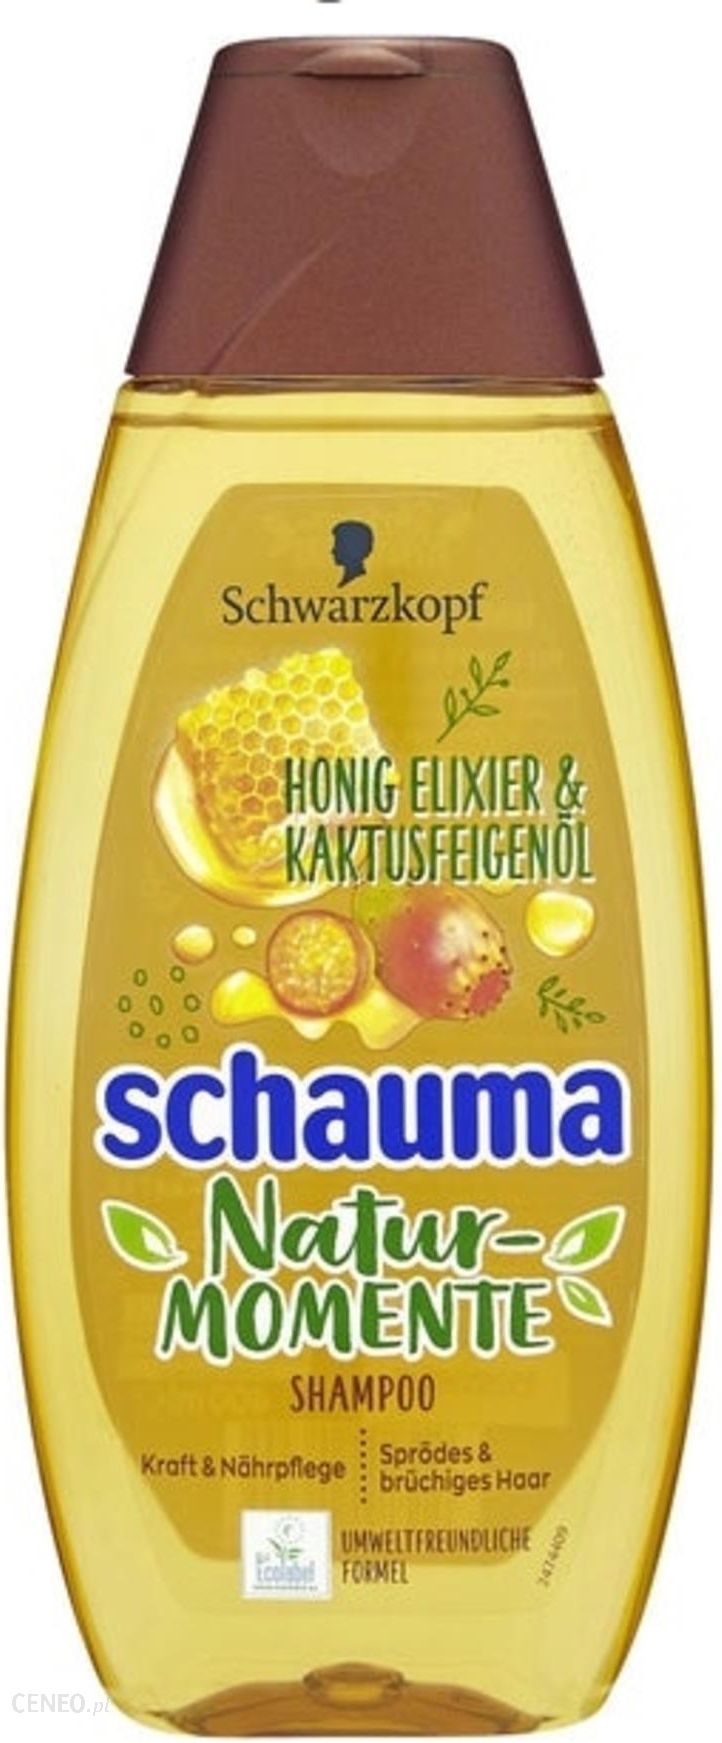 szampon schwarzkopf miod i olejek z opuncji figowej